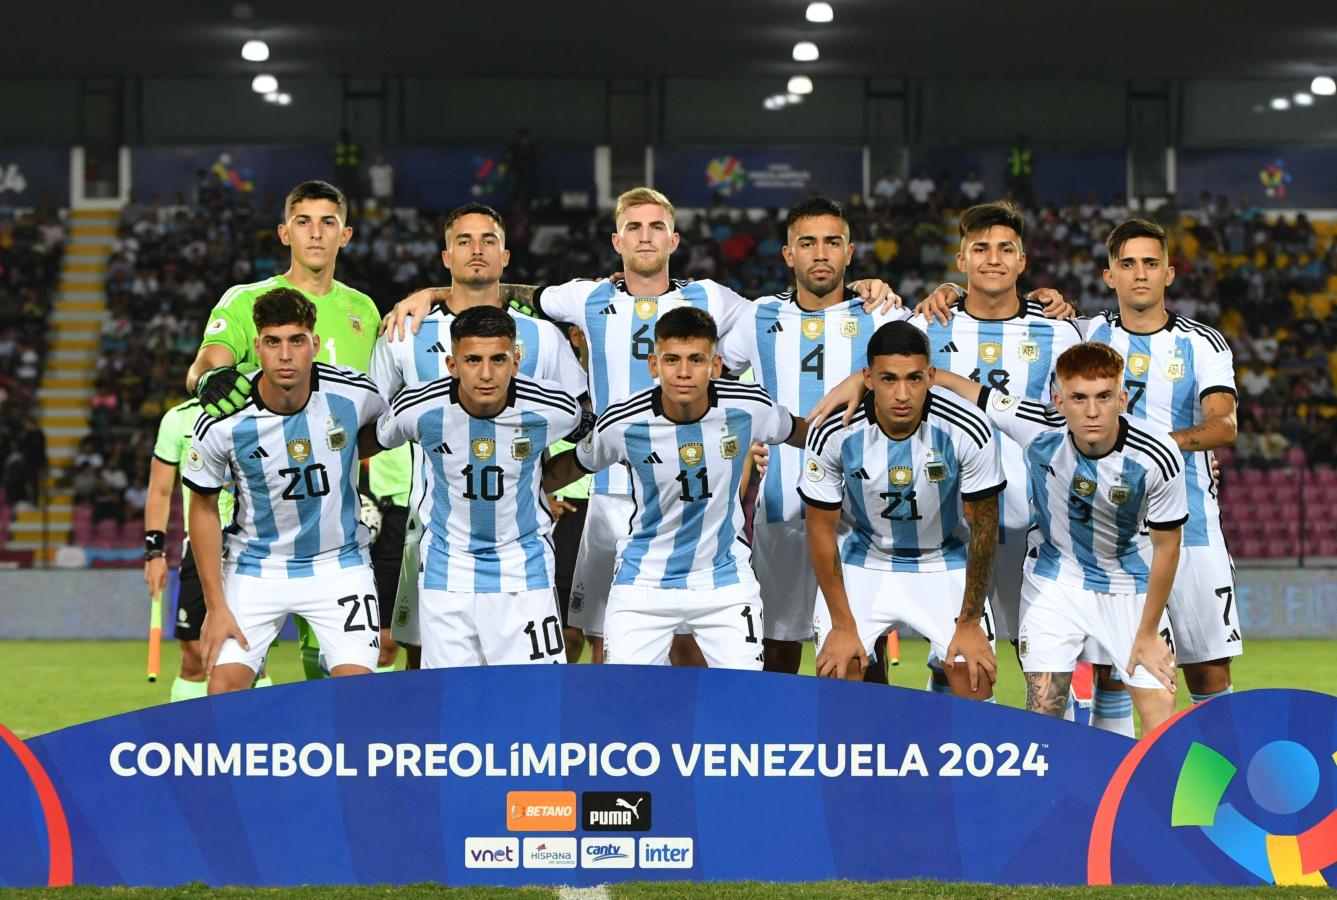 Imagen La Selección Argentina Sub 23 se clasificó a París 2024 en el Preolímpico de Venezuela.